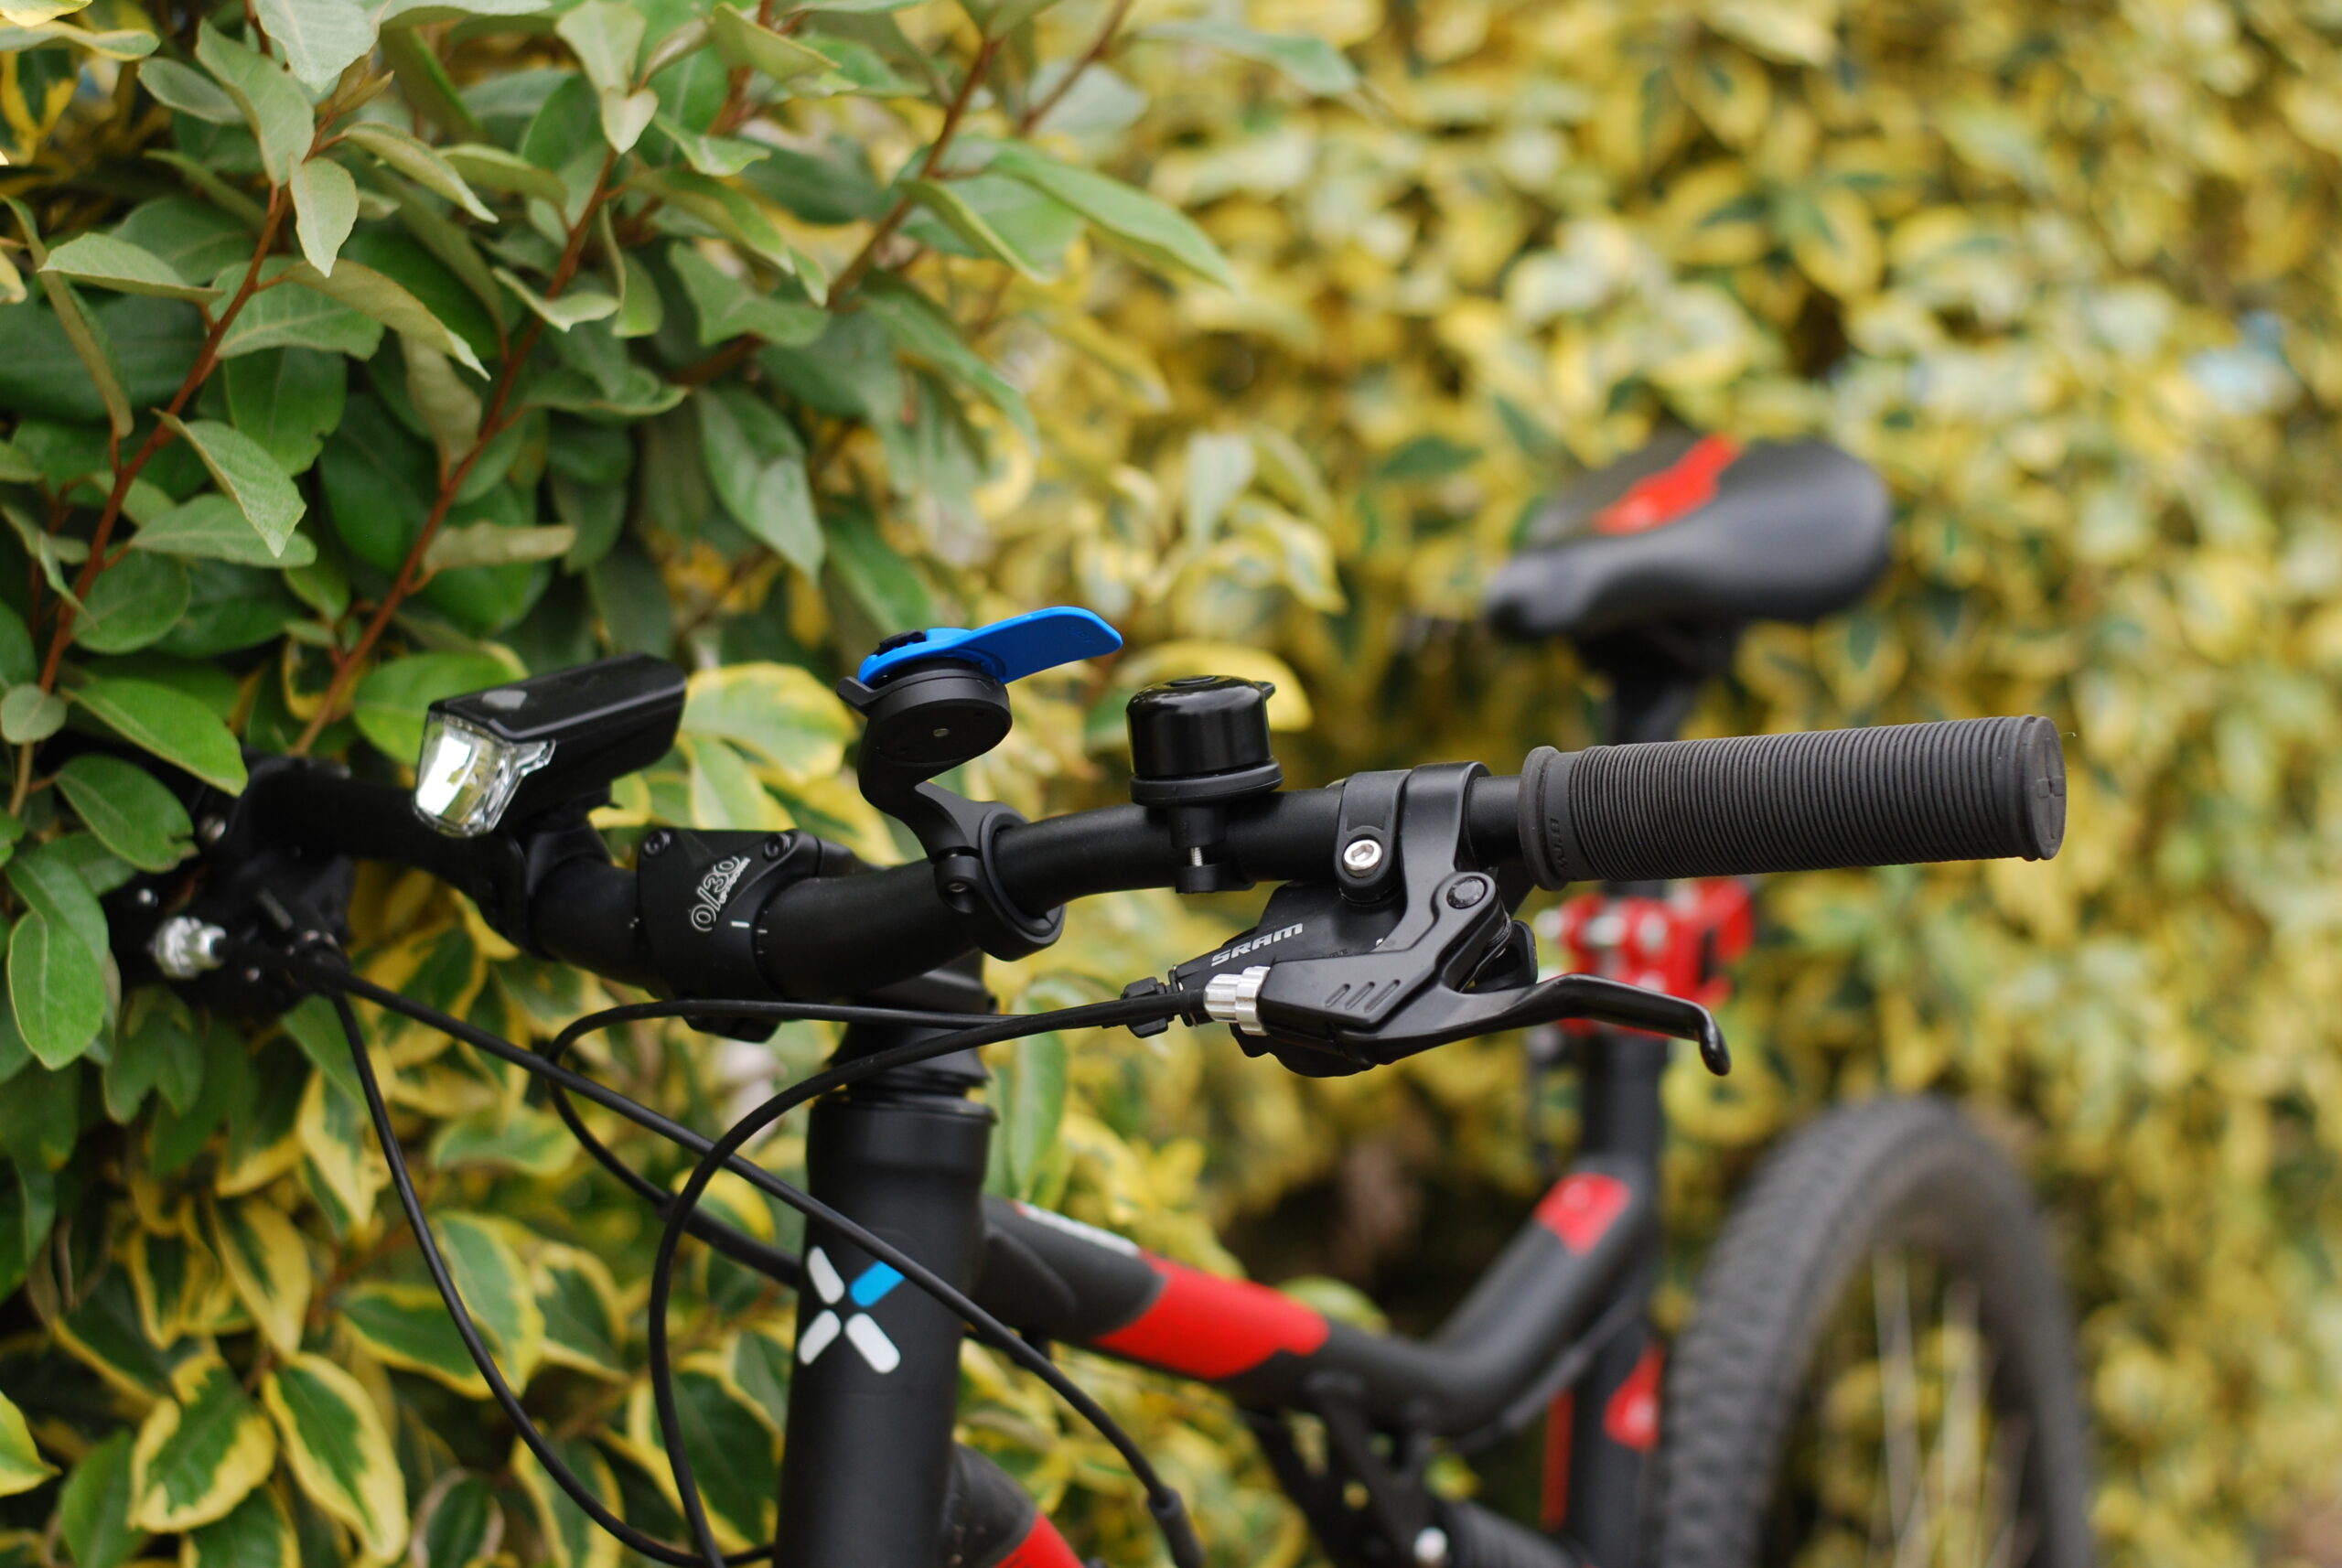 Installer un AirTag discrètement sur son vélo pour le localiser